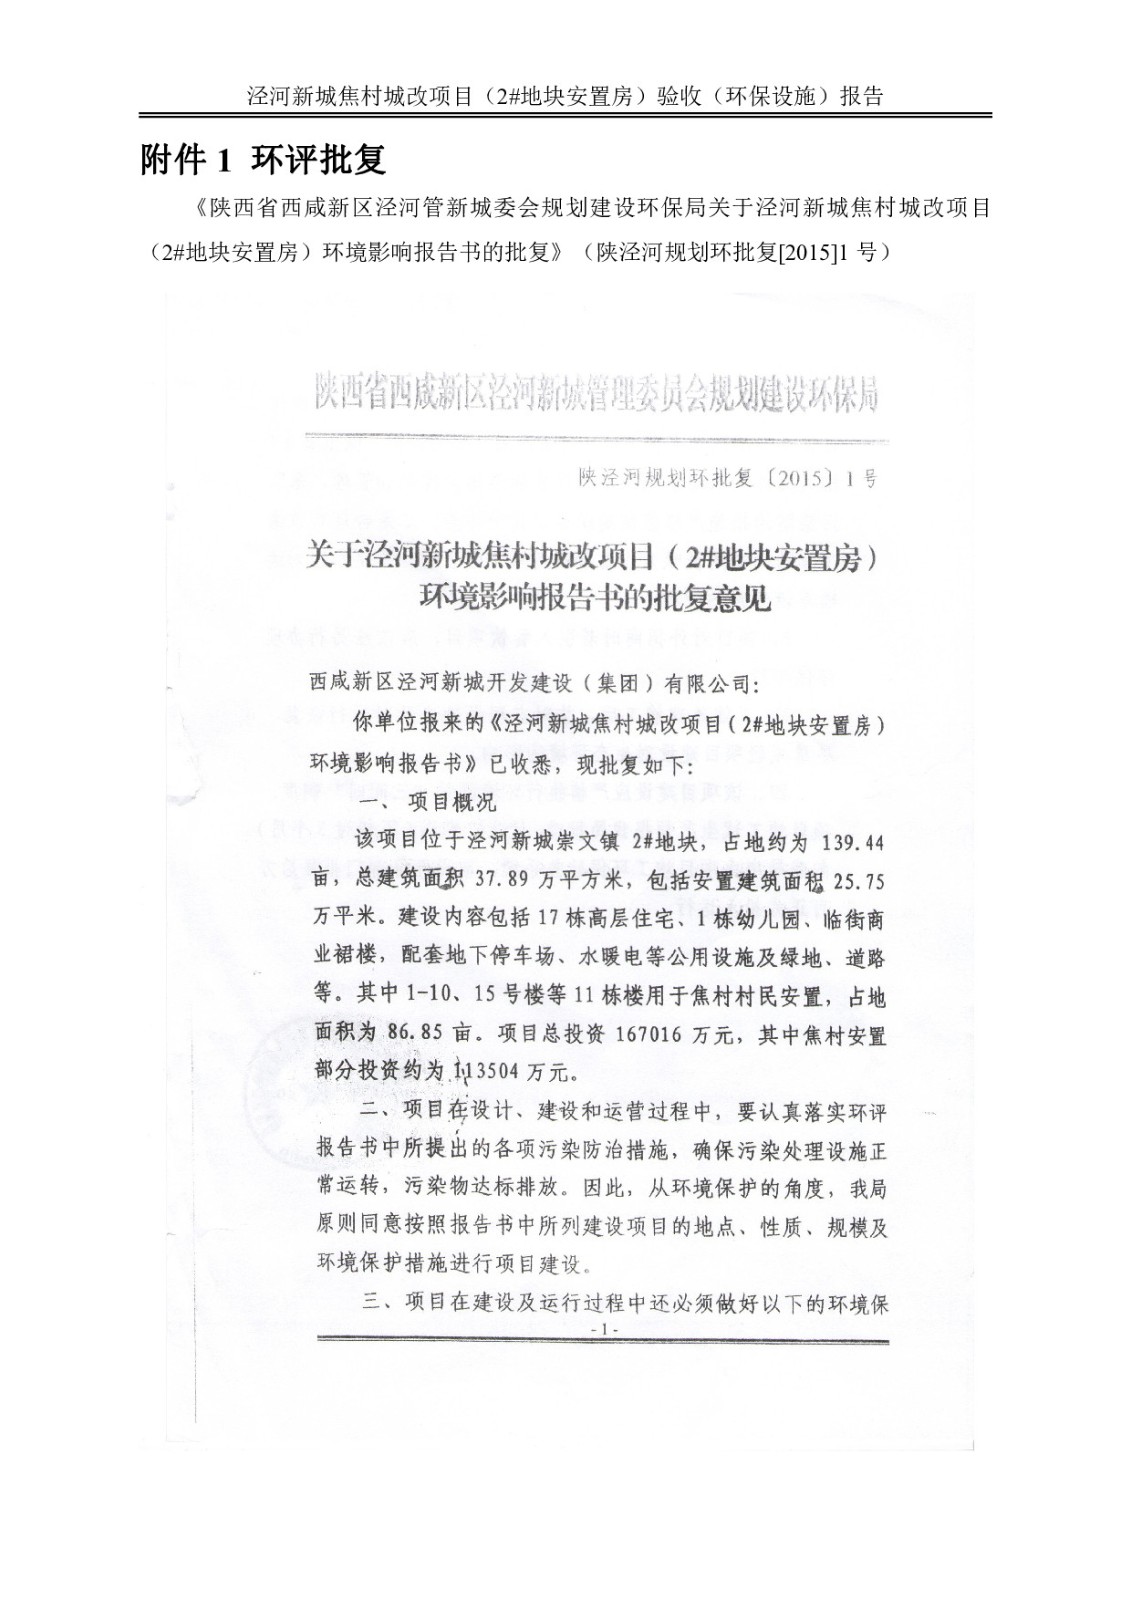 泾河新城焦村城改项目（2#地块安置房）竣工验收监测报告书及意见(2)_029.jpg